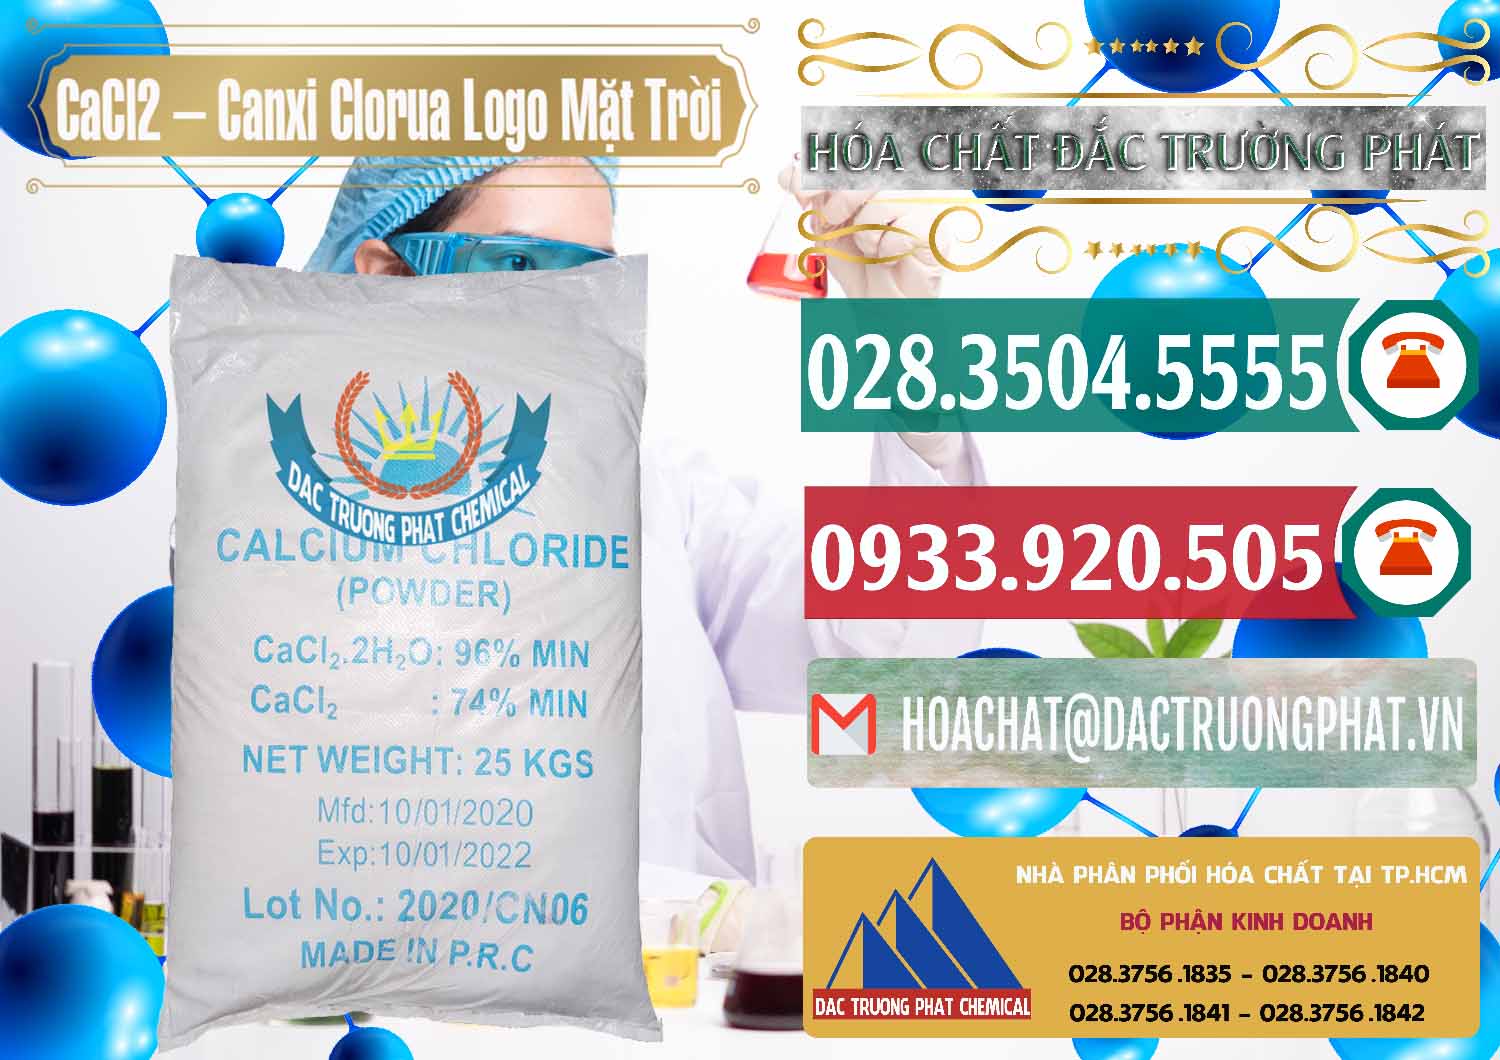 Công ty chuyên cung ứng ( bán ) CaCl2 – Canxi Clorua 96% Logo Mặt Trời Trung Quốc China - 0041 - Nhà phân phối ( bán ) hóa chất tại TP.HCM - muabanhoachat.vn